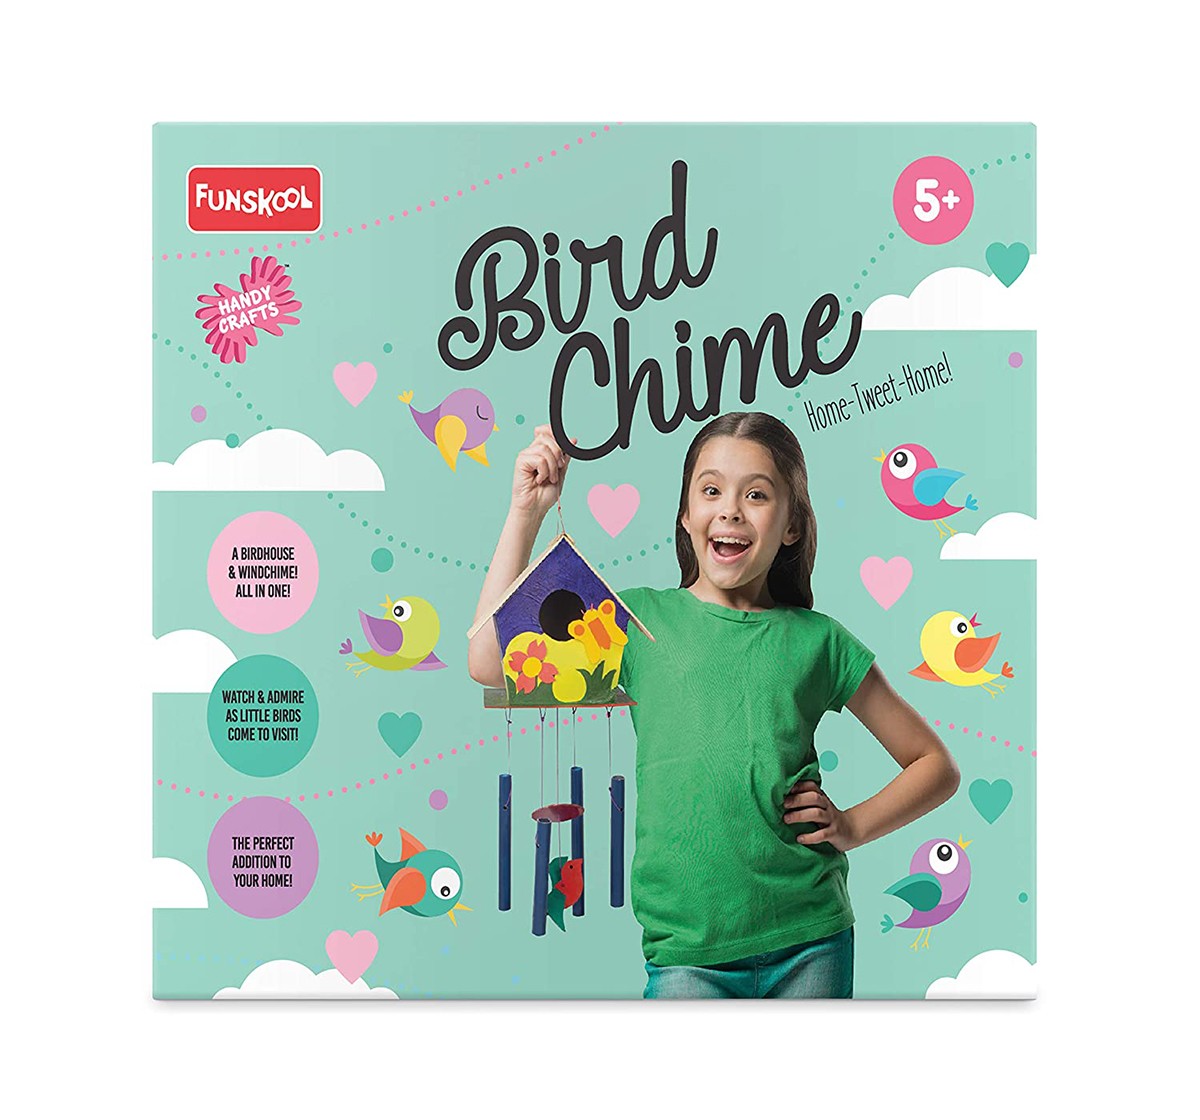 Funskool - Handycrafts Bird Chime DIY Art & Craft Kits for age 5Y+ 